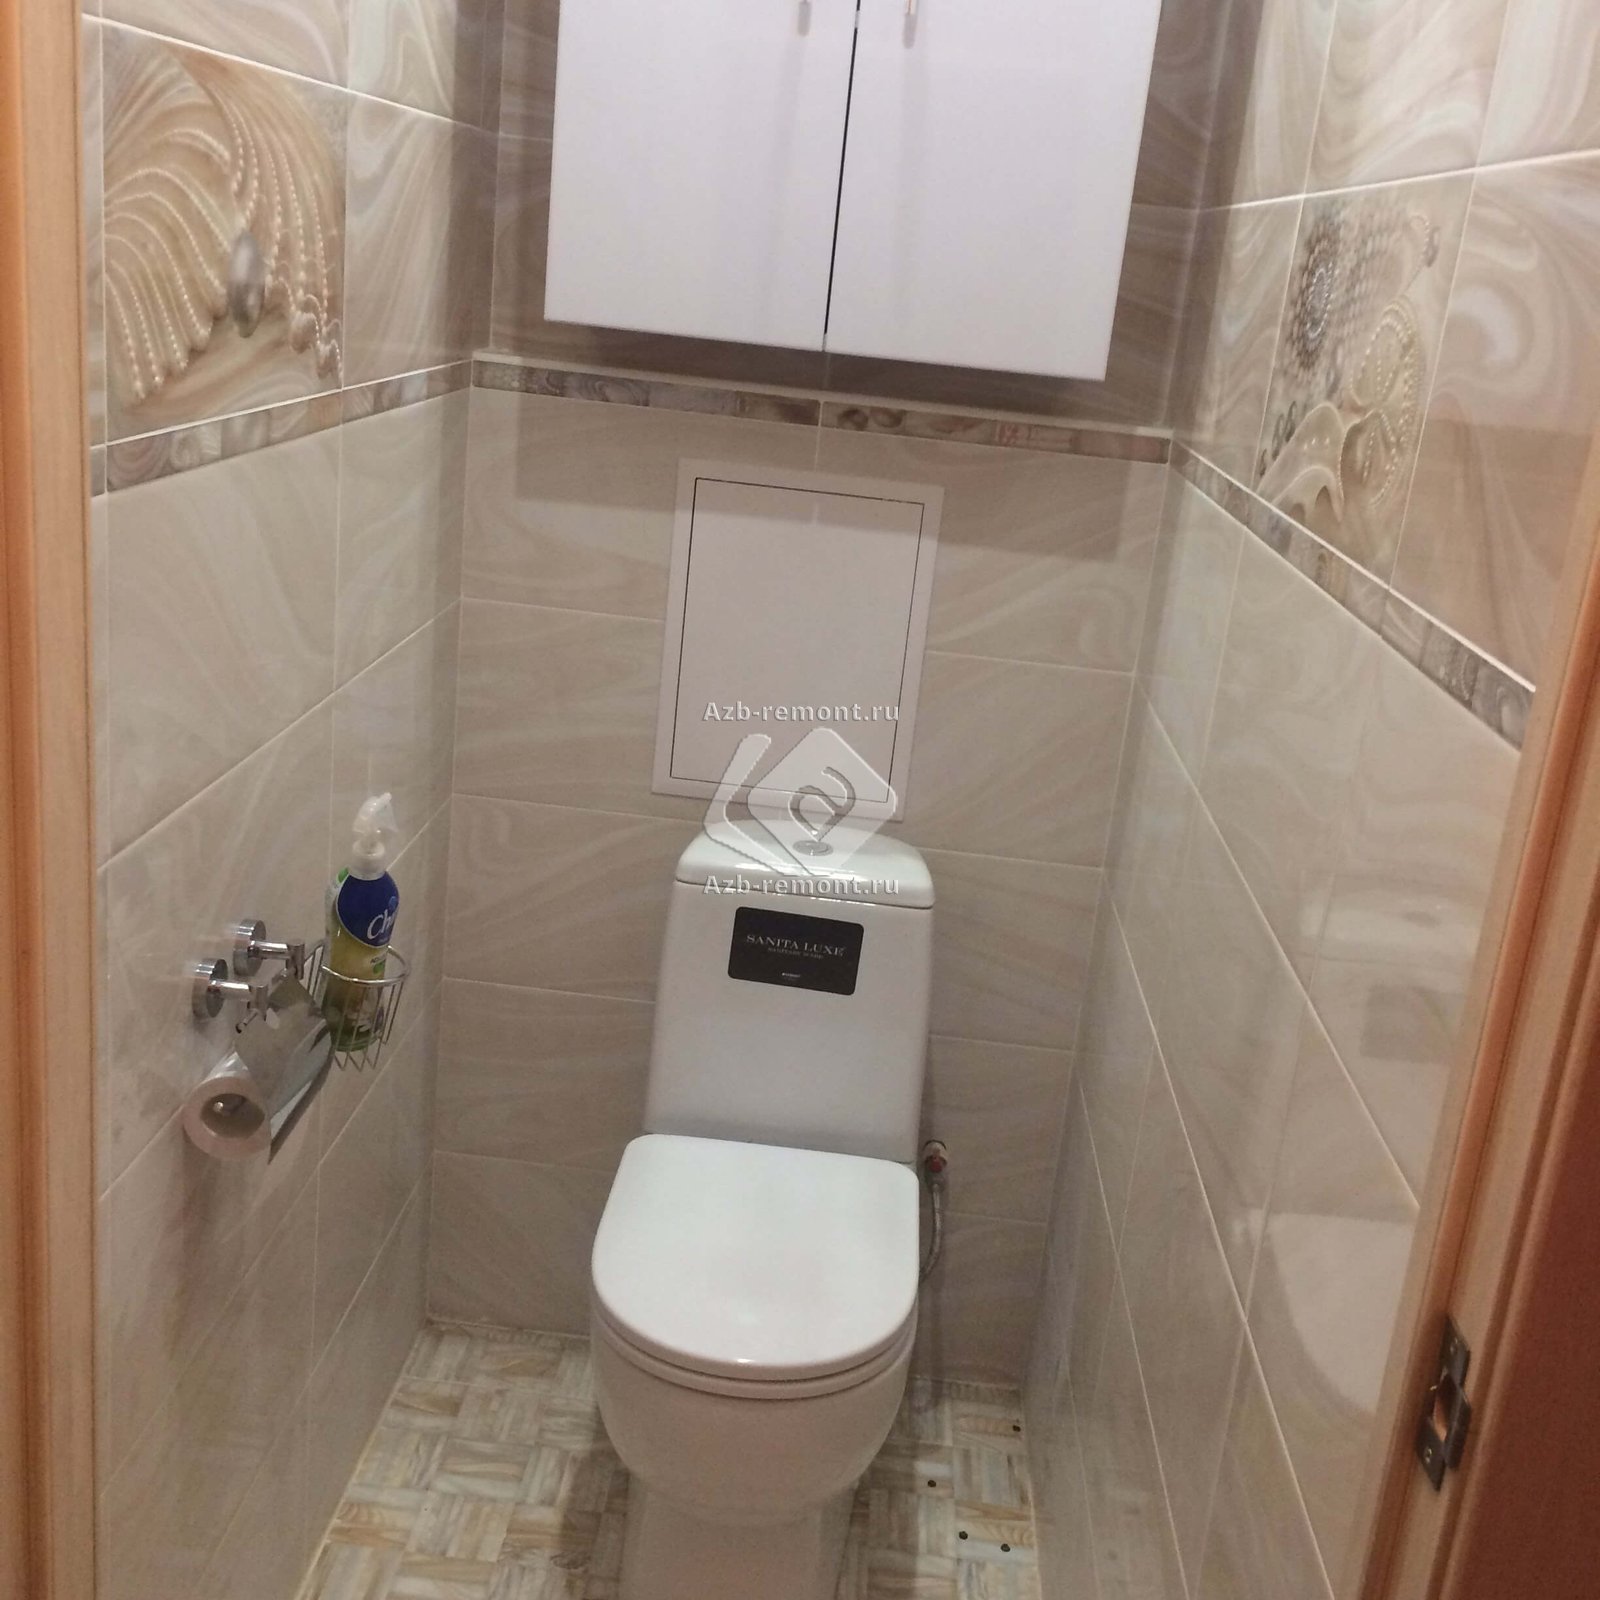 Ремонт туалета в квартире плиткой фото дизайн со шкафчиком